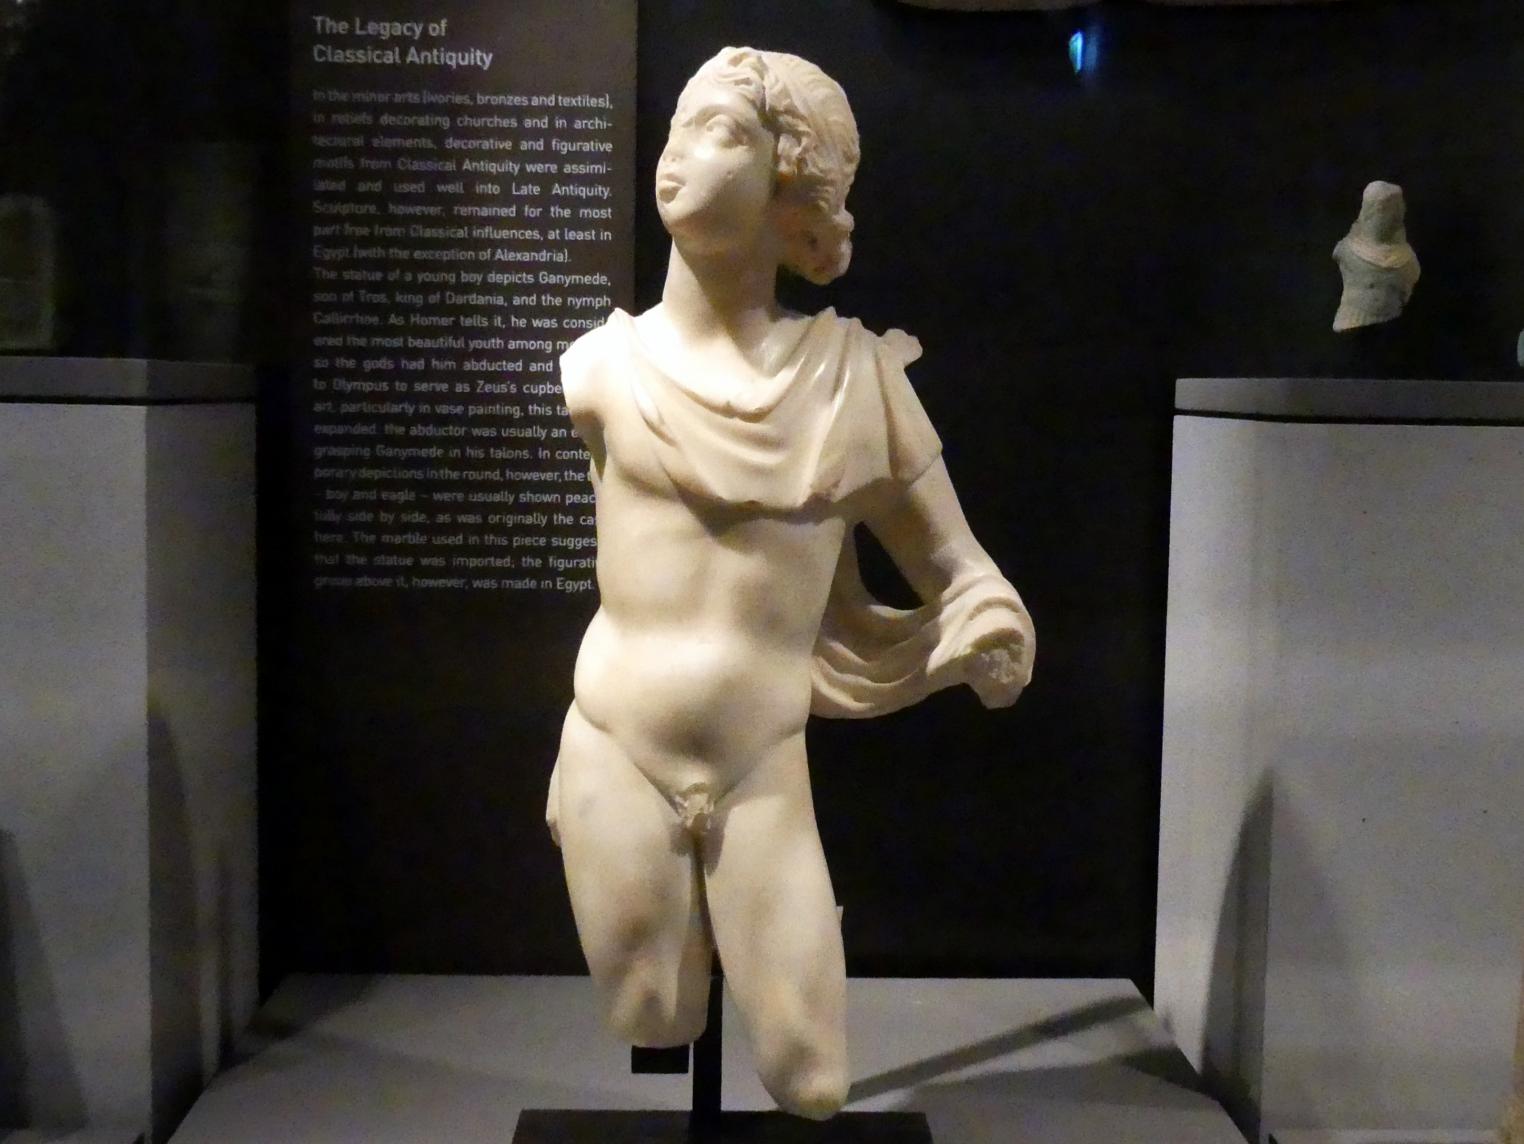 Statue des Ganymed, Römische Kaiserzeit, 27 v. Chr. - 54 n. Chr., 200 - 230